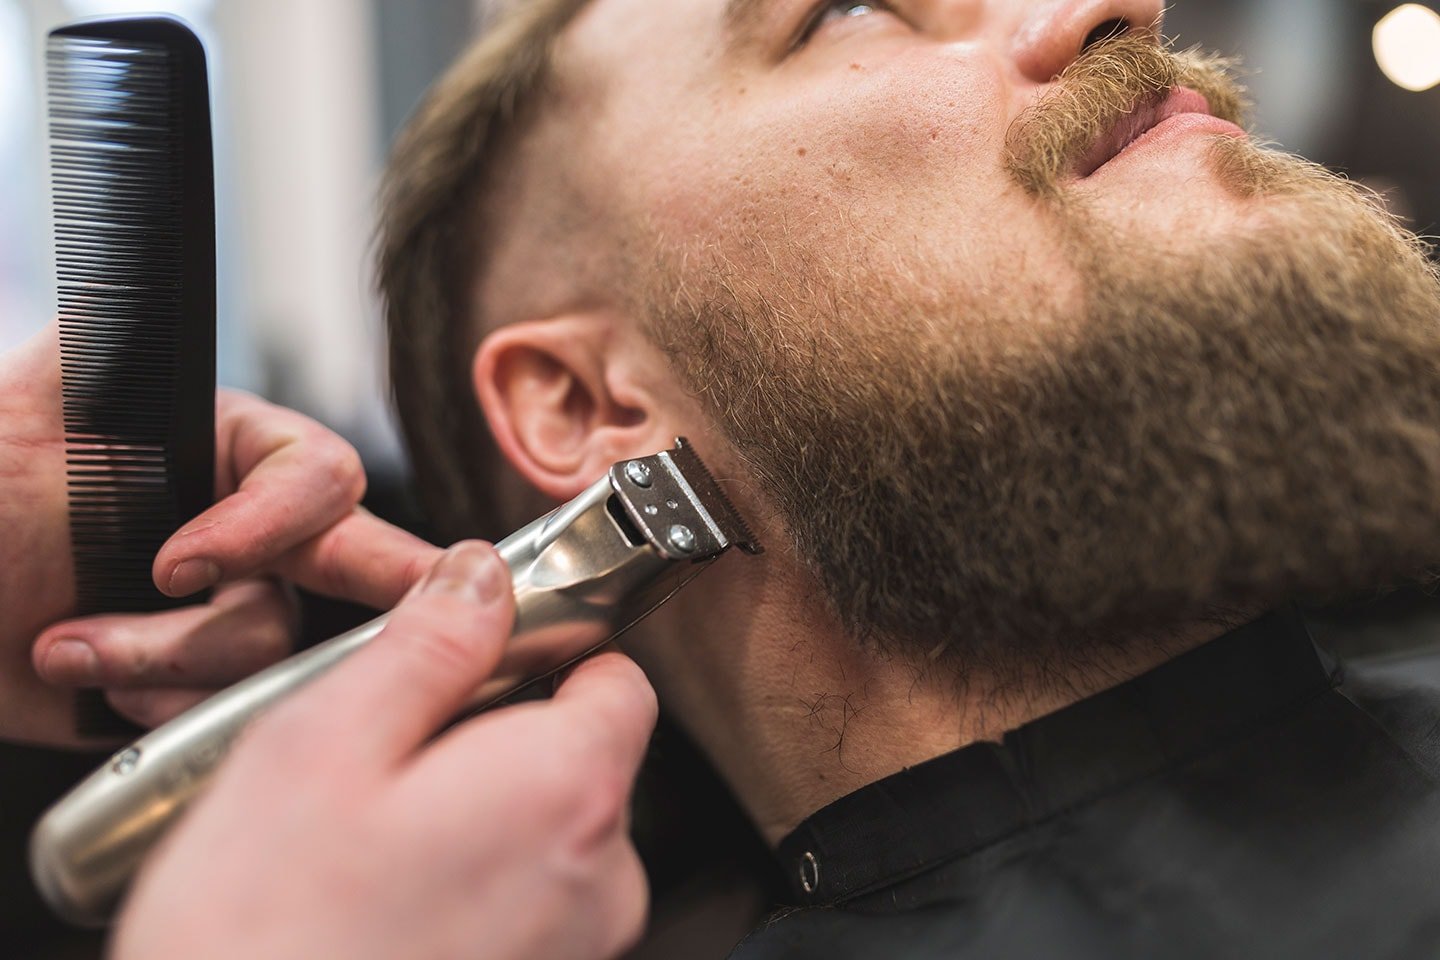 Herrklippning & trim av skägg hos Linus Salong & Barbershop, Södermalm (1 av 3)